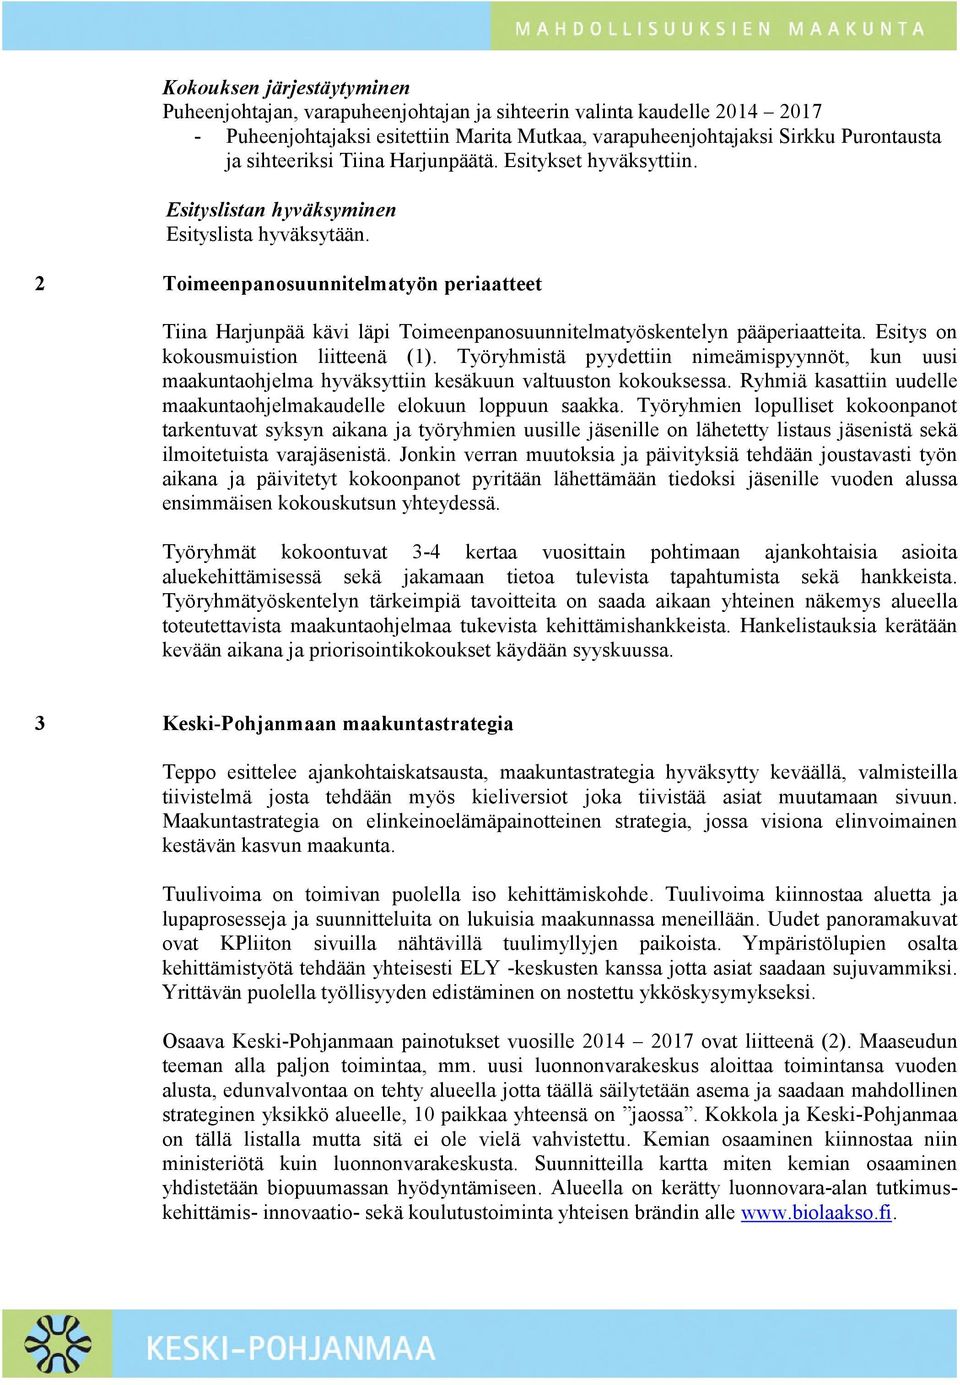 2 Toimeenpanosuunnitelmatyön periaatteet Tiina Harjunpää kävi läpi Toimeenpanosuunnitelmatyöskentelyn pääperiaatteita. Esitys on kokousmuistion liitteenä (1).